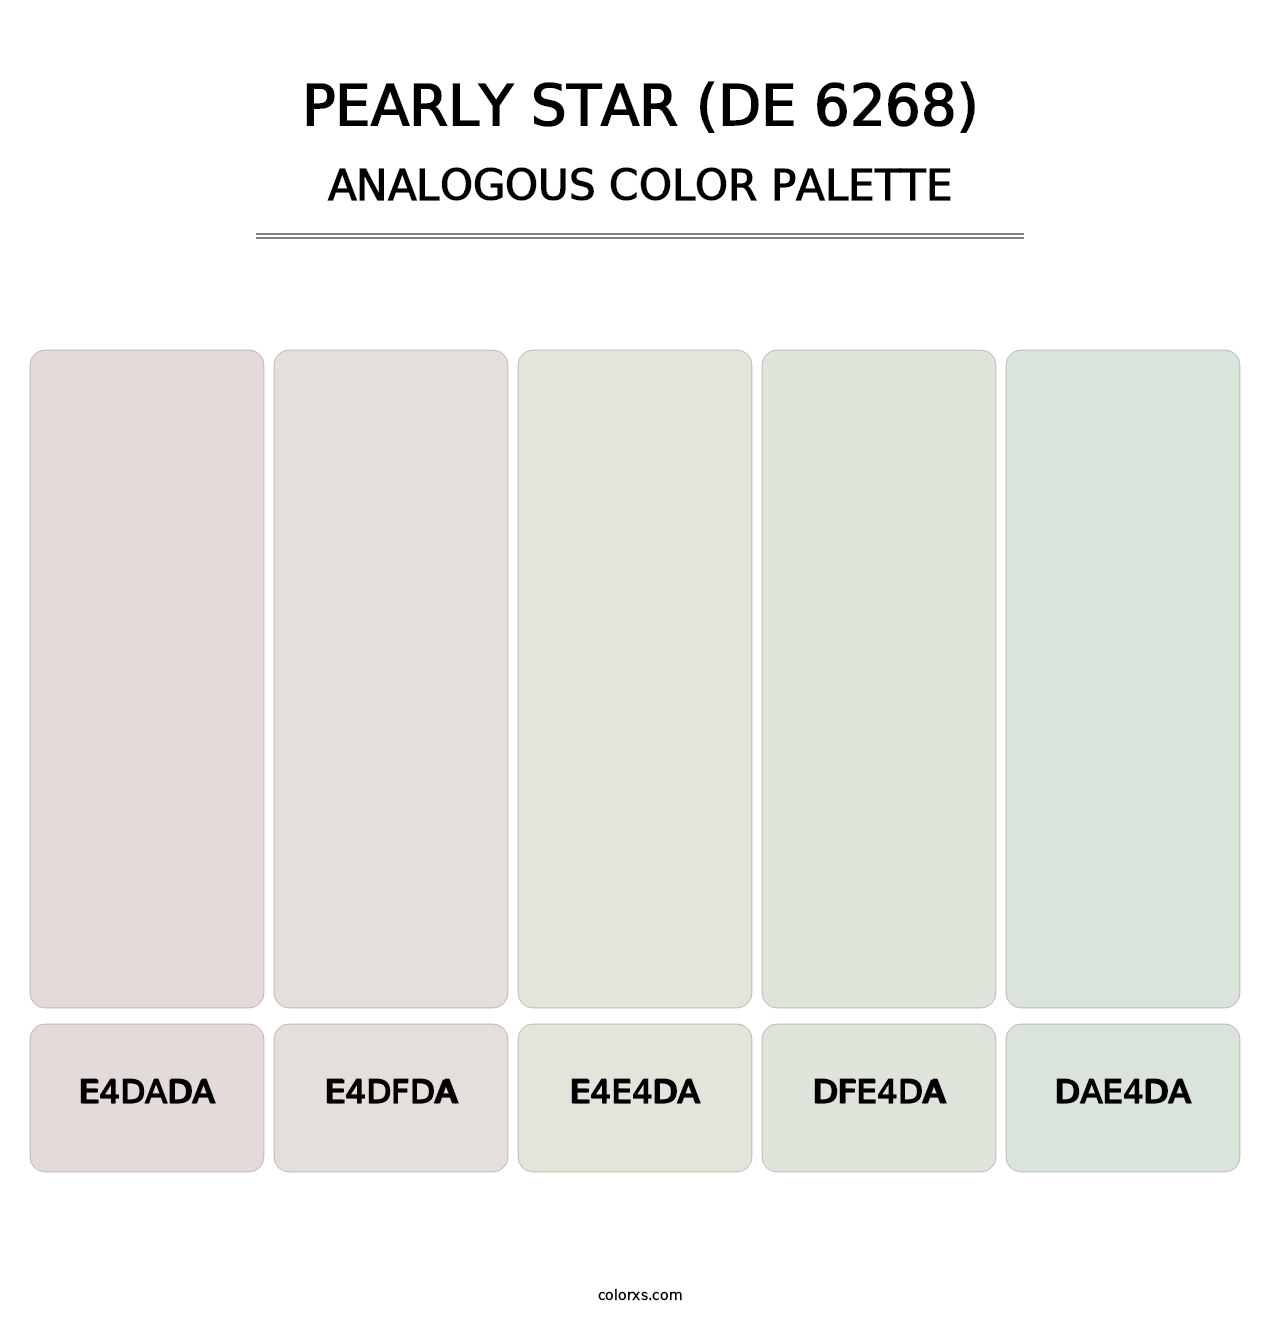 Pearly Star (DE 6268) - Analogous Color Palette